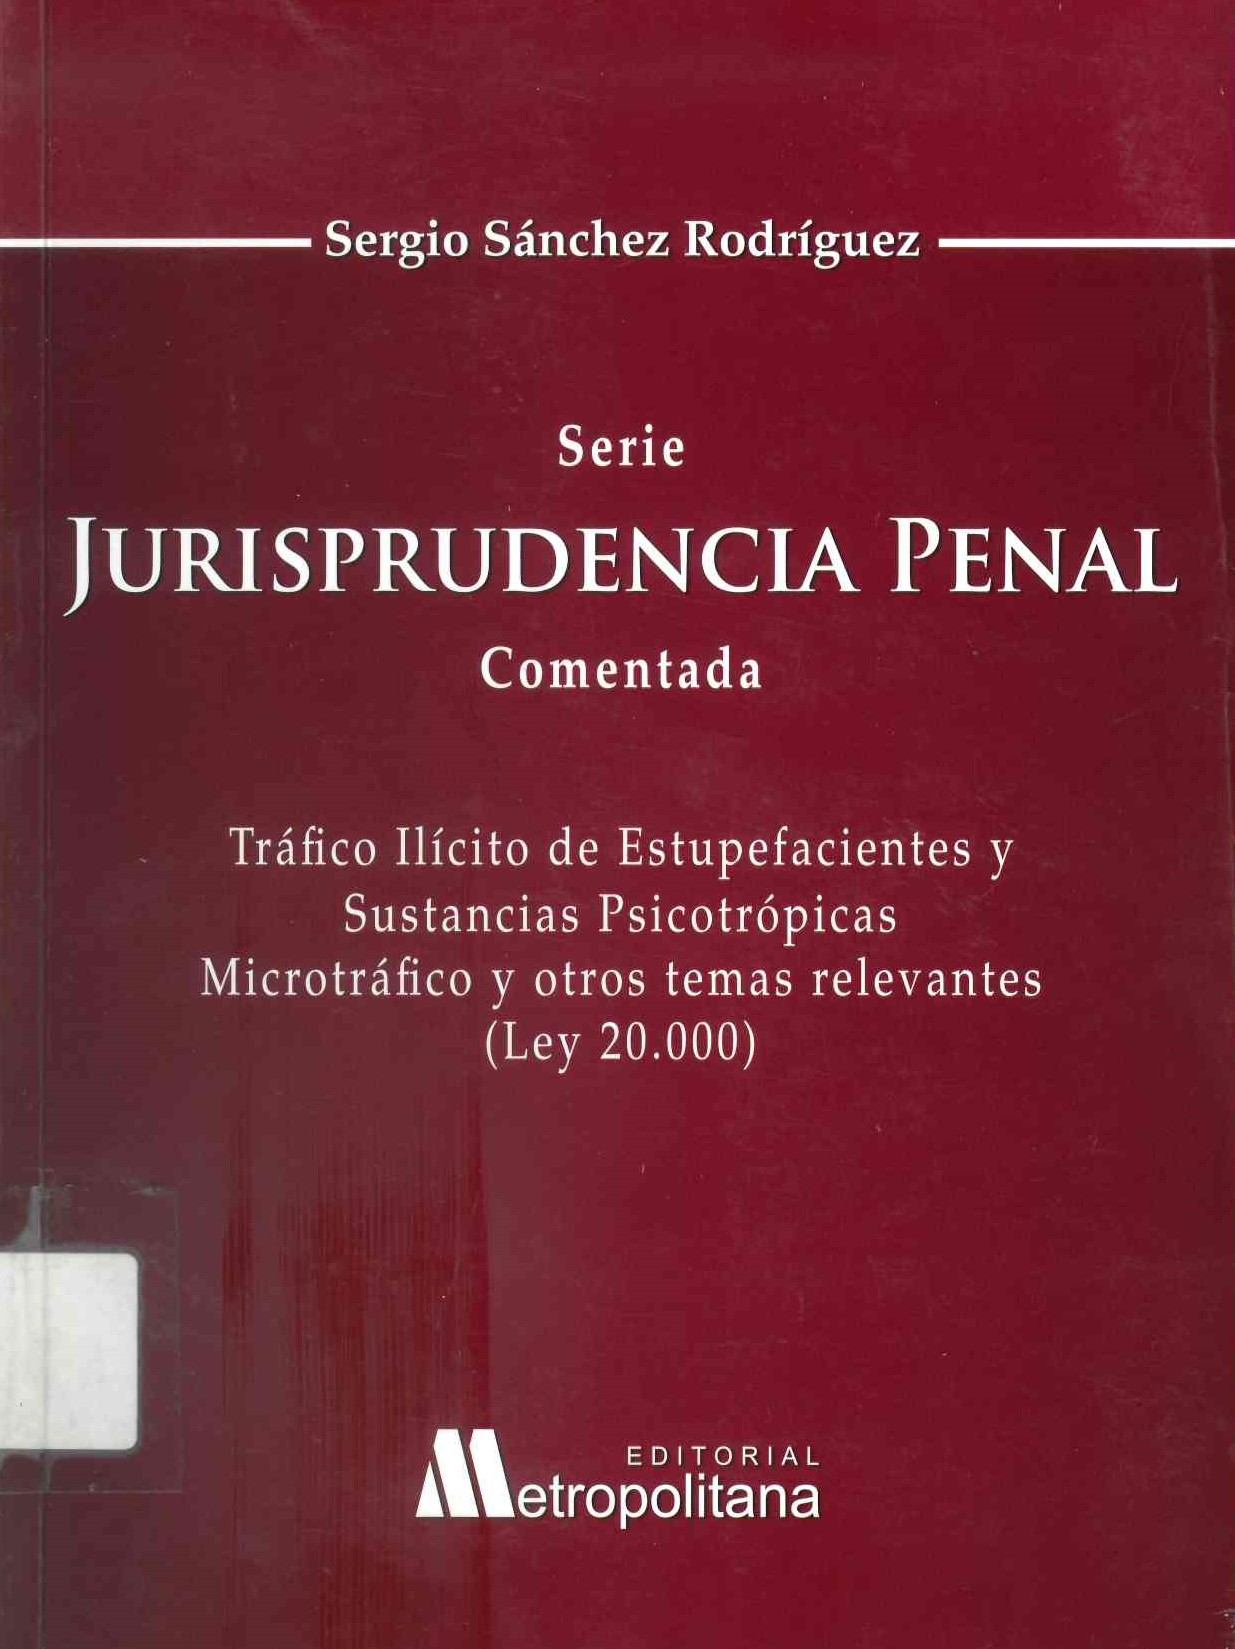 Jurisprudencia penal comentada: Tráfico ilícito de estupefacientes y sustancias psicotrópicas, microtráfico y otros temas relevantes (Ley 20.000)